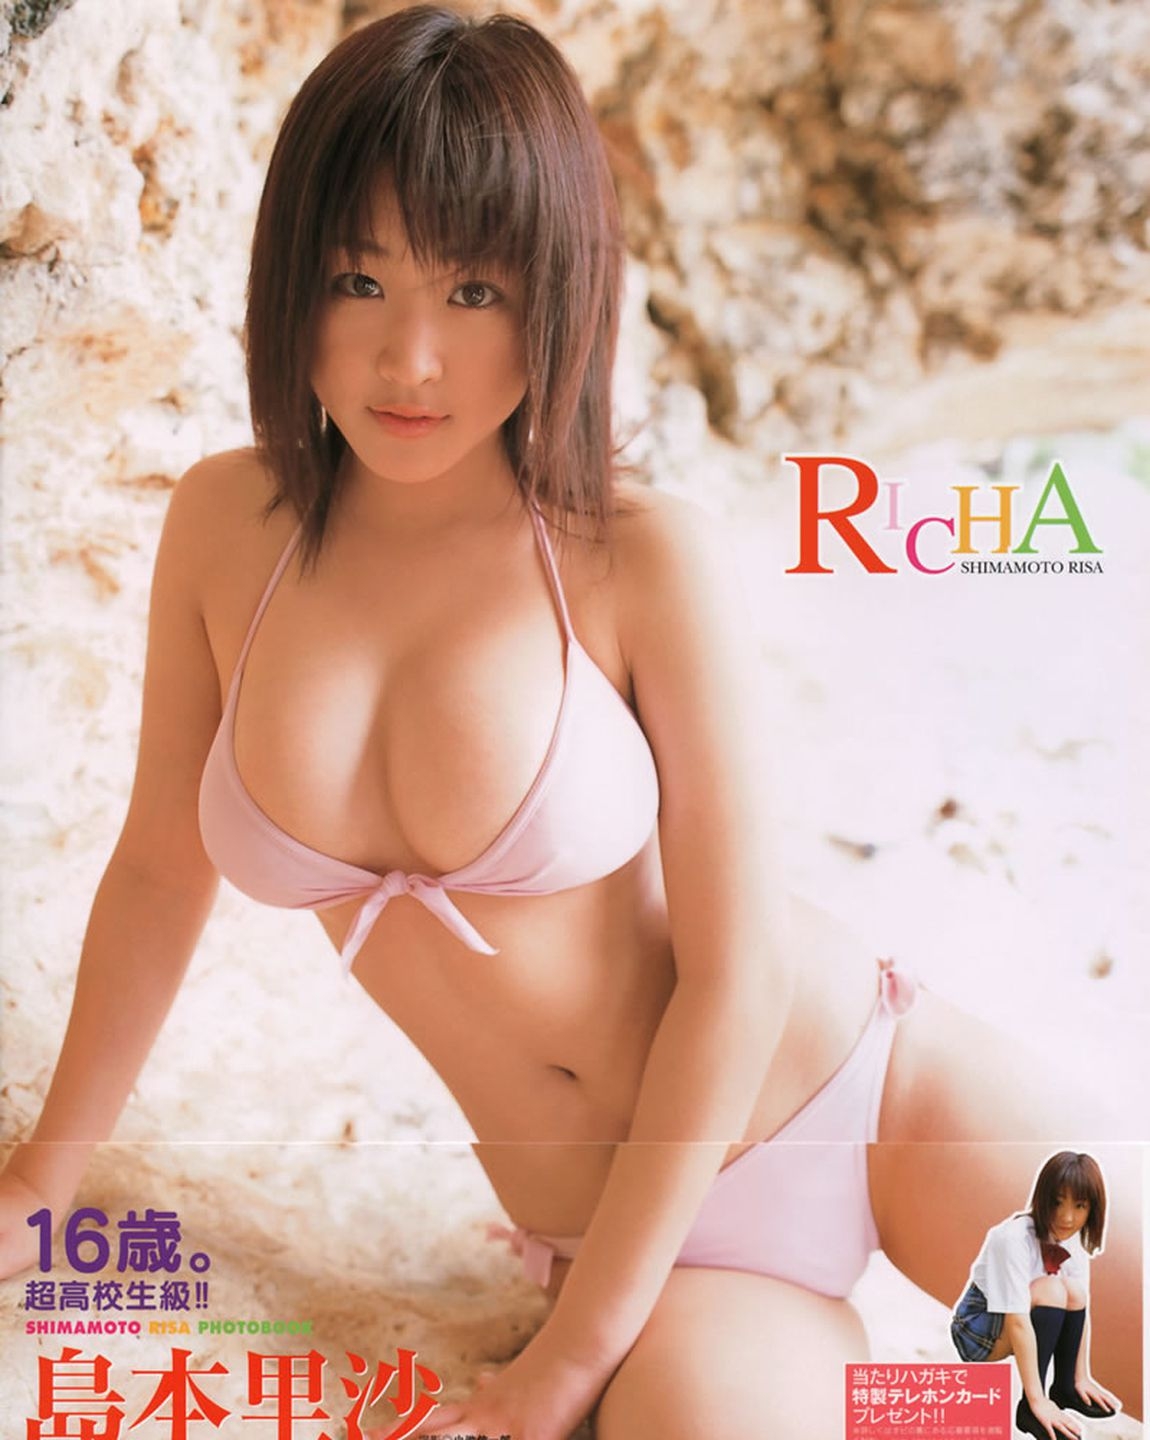 島本里沙《Richa》 [PhotoBook]  第-1张